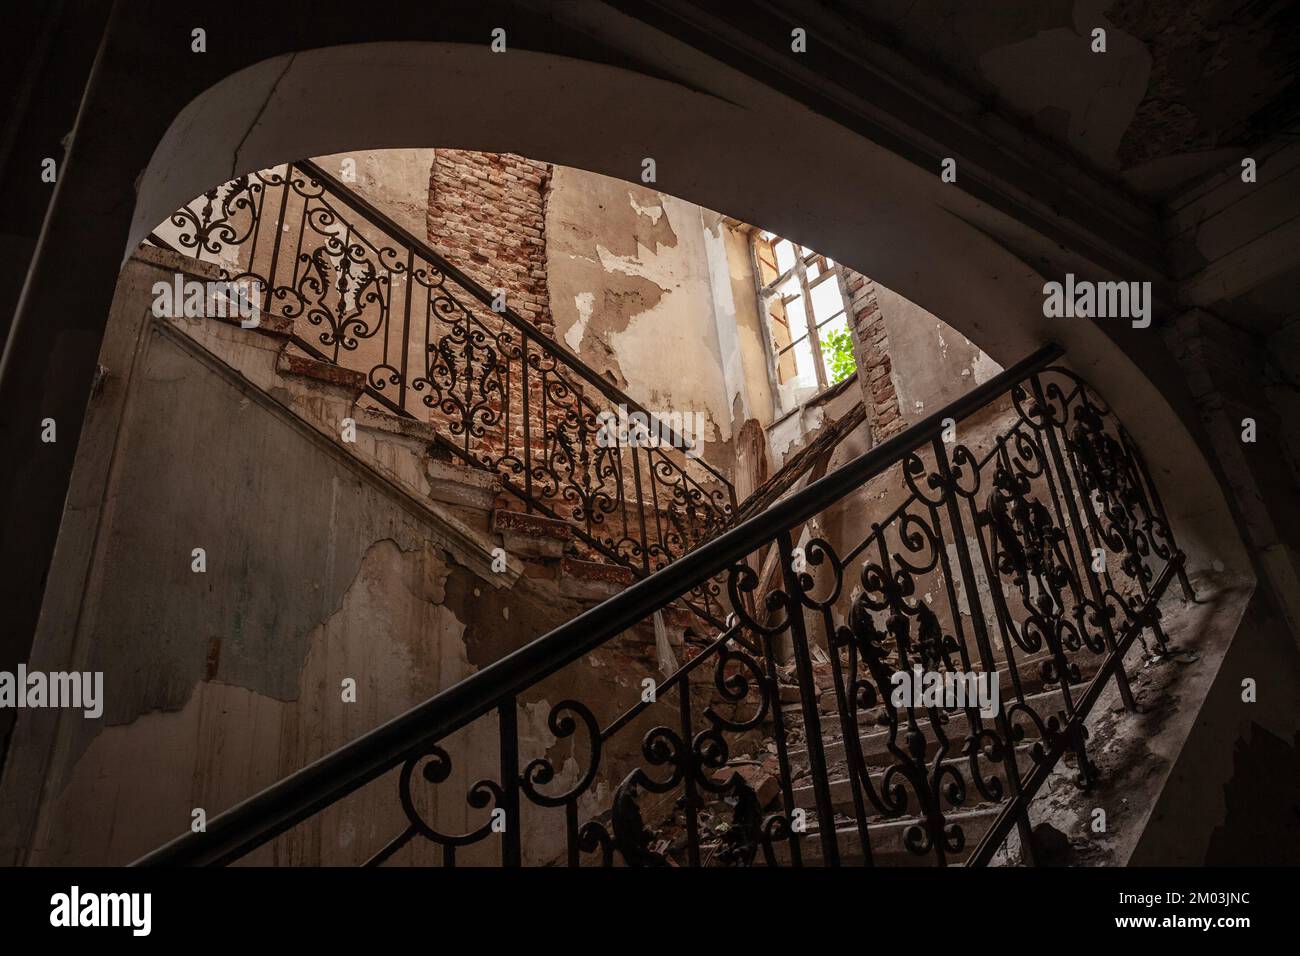 Cuadro de escaleras en mal estado, abandonadas, en decadencia, dentro de una mansión abandonada. Foto de stock